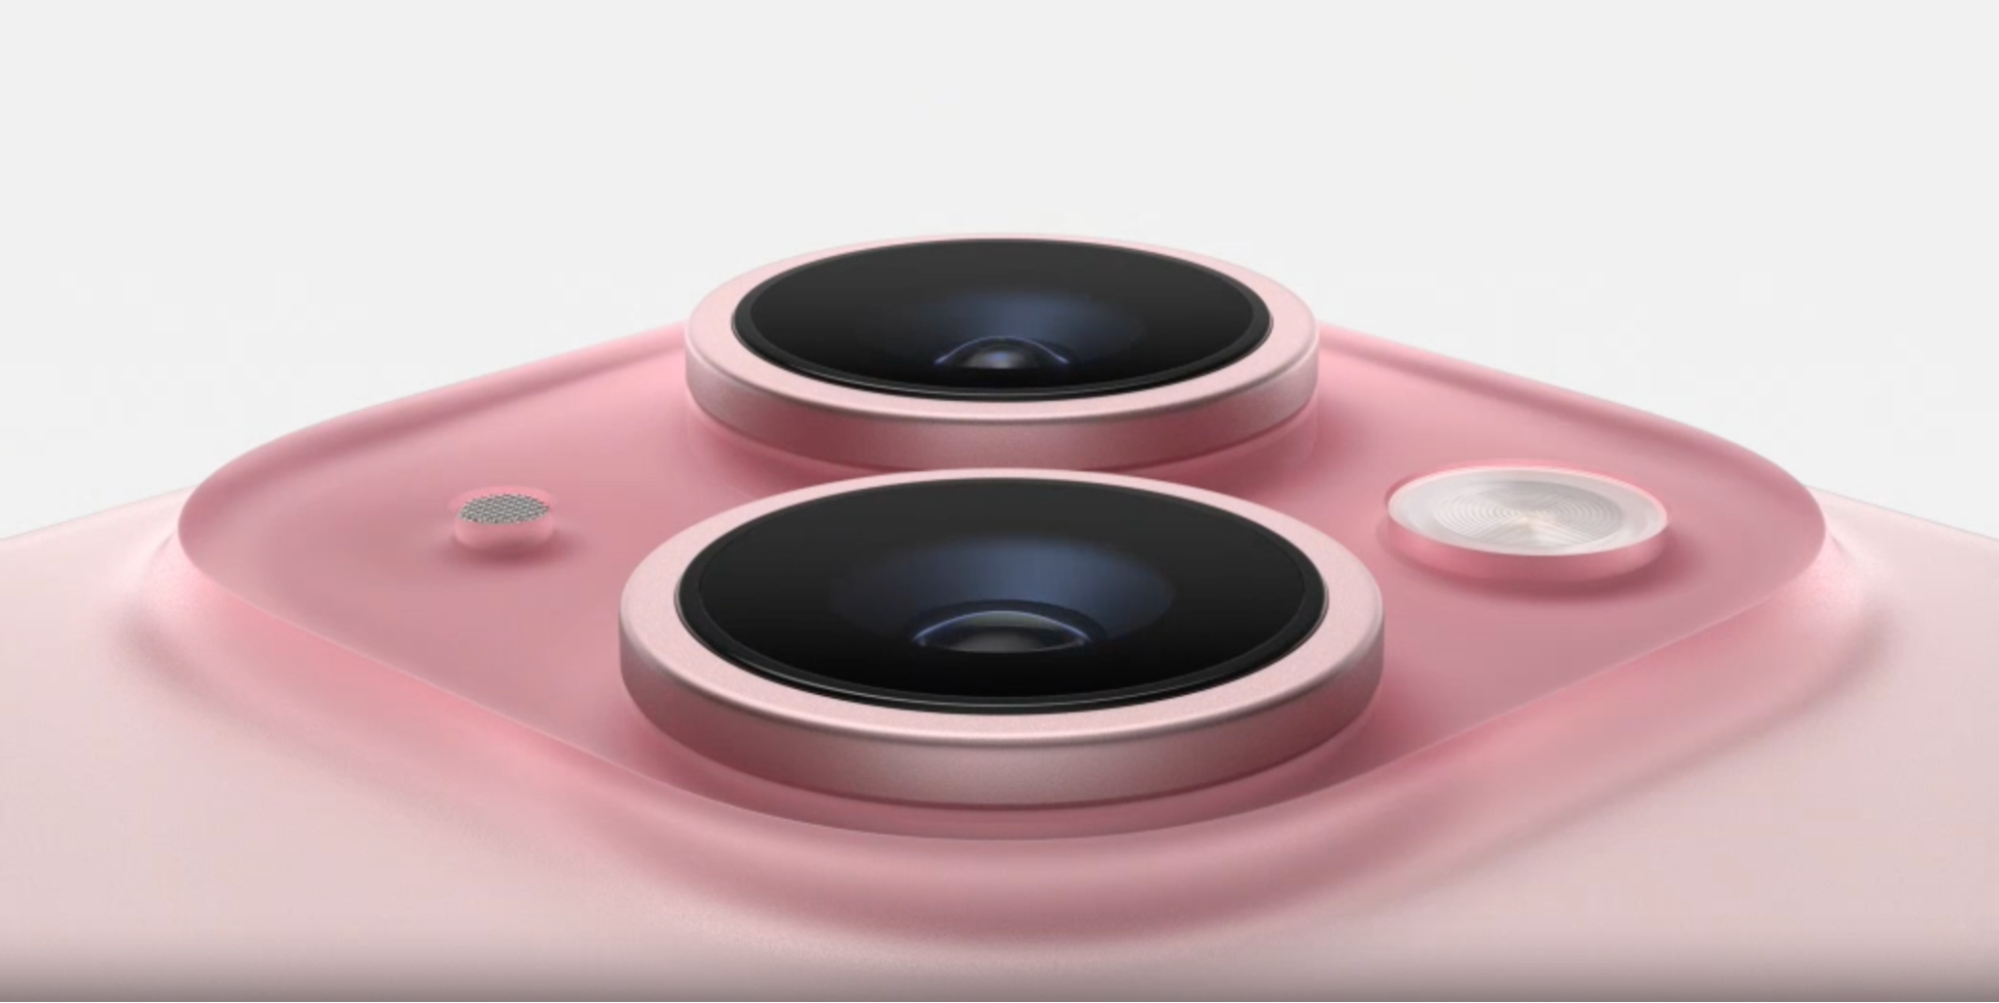 Phần camera của iPhone 15 Hồng cũng được bao phủ bởi lớp viền Hồng, giúp cả thiết bị trông mềm mại hơn